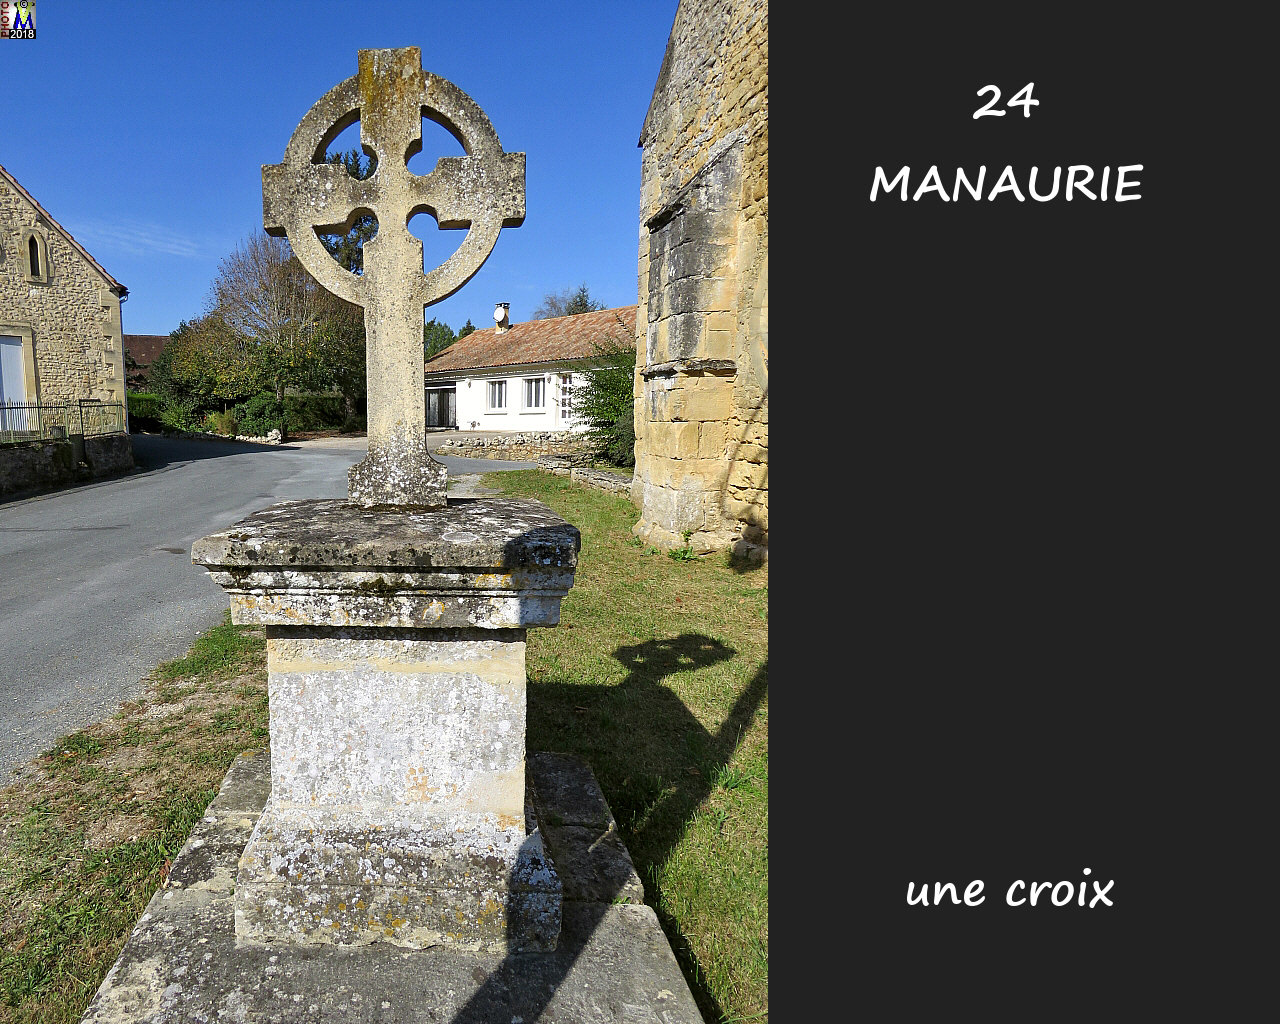 24MANAURIE_croix_1000.jpg